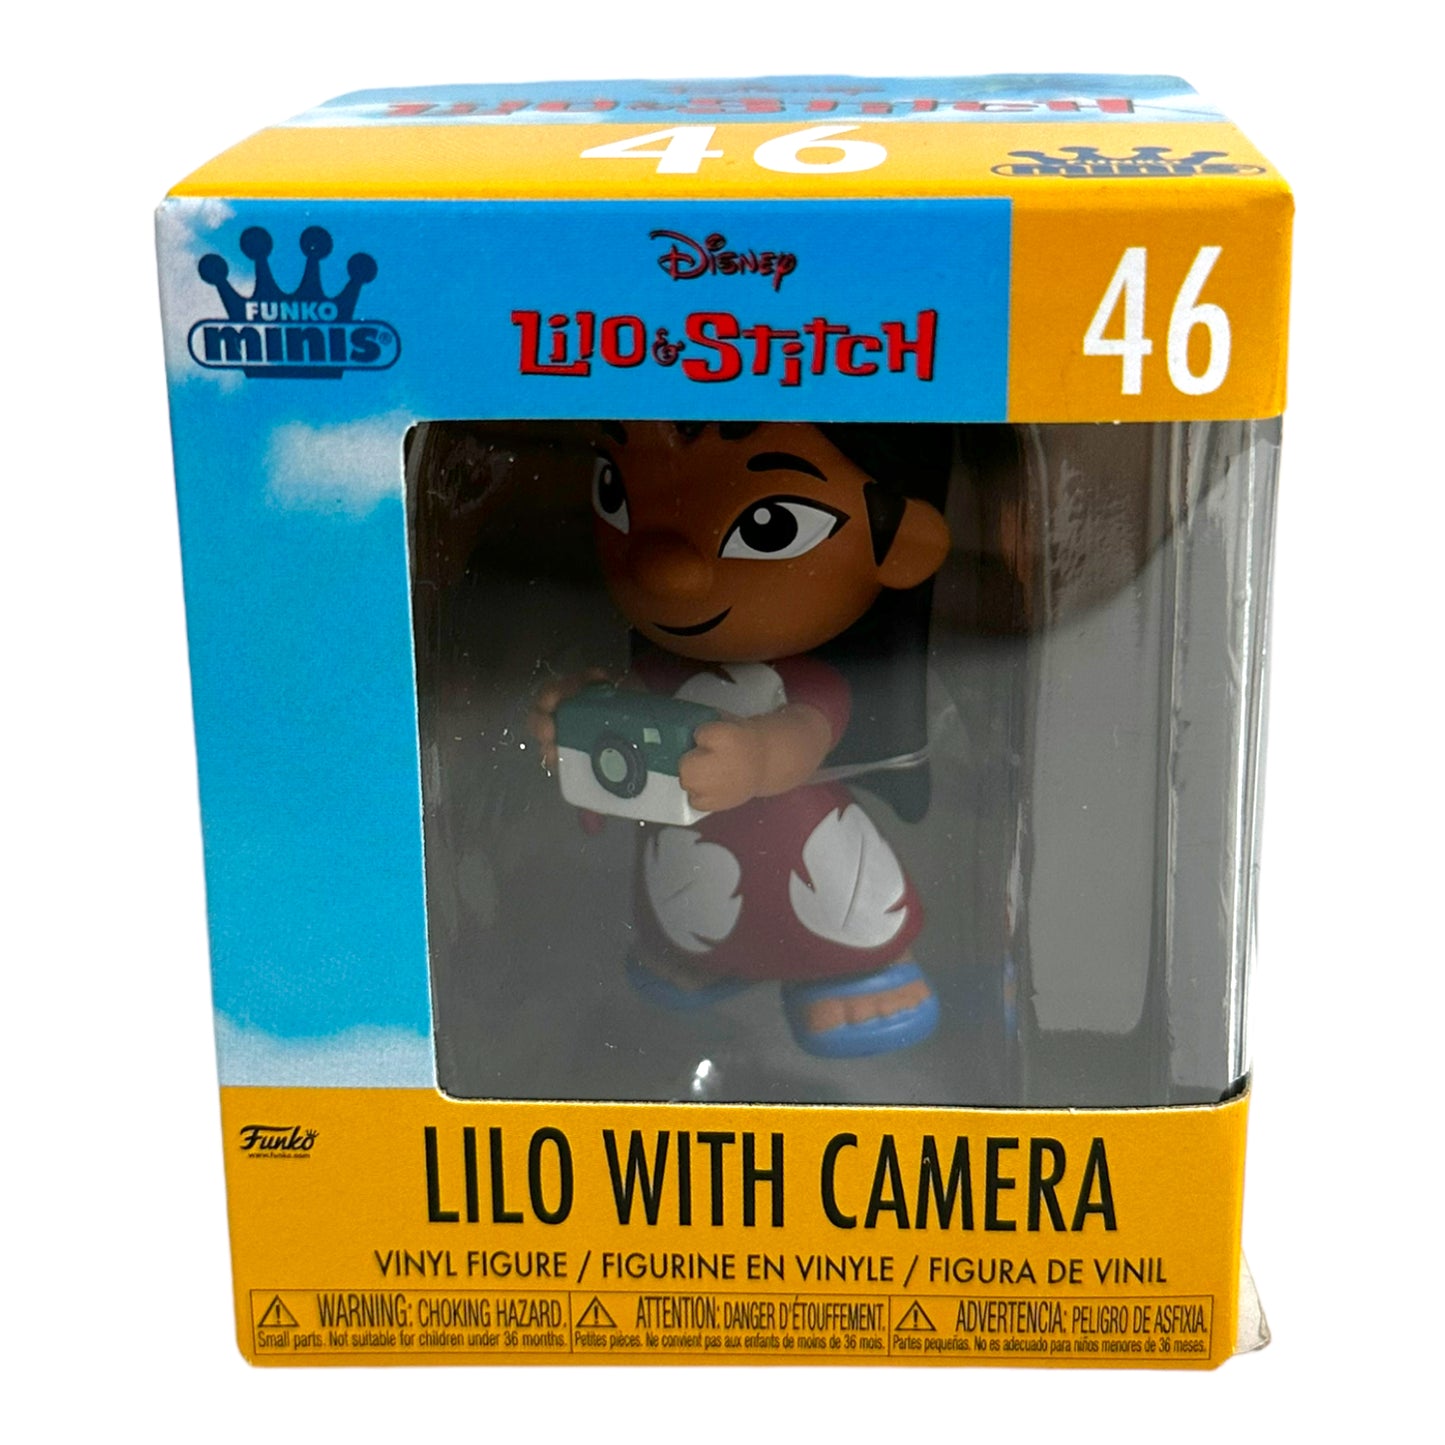 Funko Minis Disney Lilo & Stitch Lilo with Camera Figure